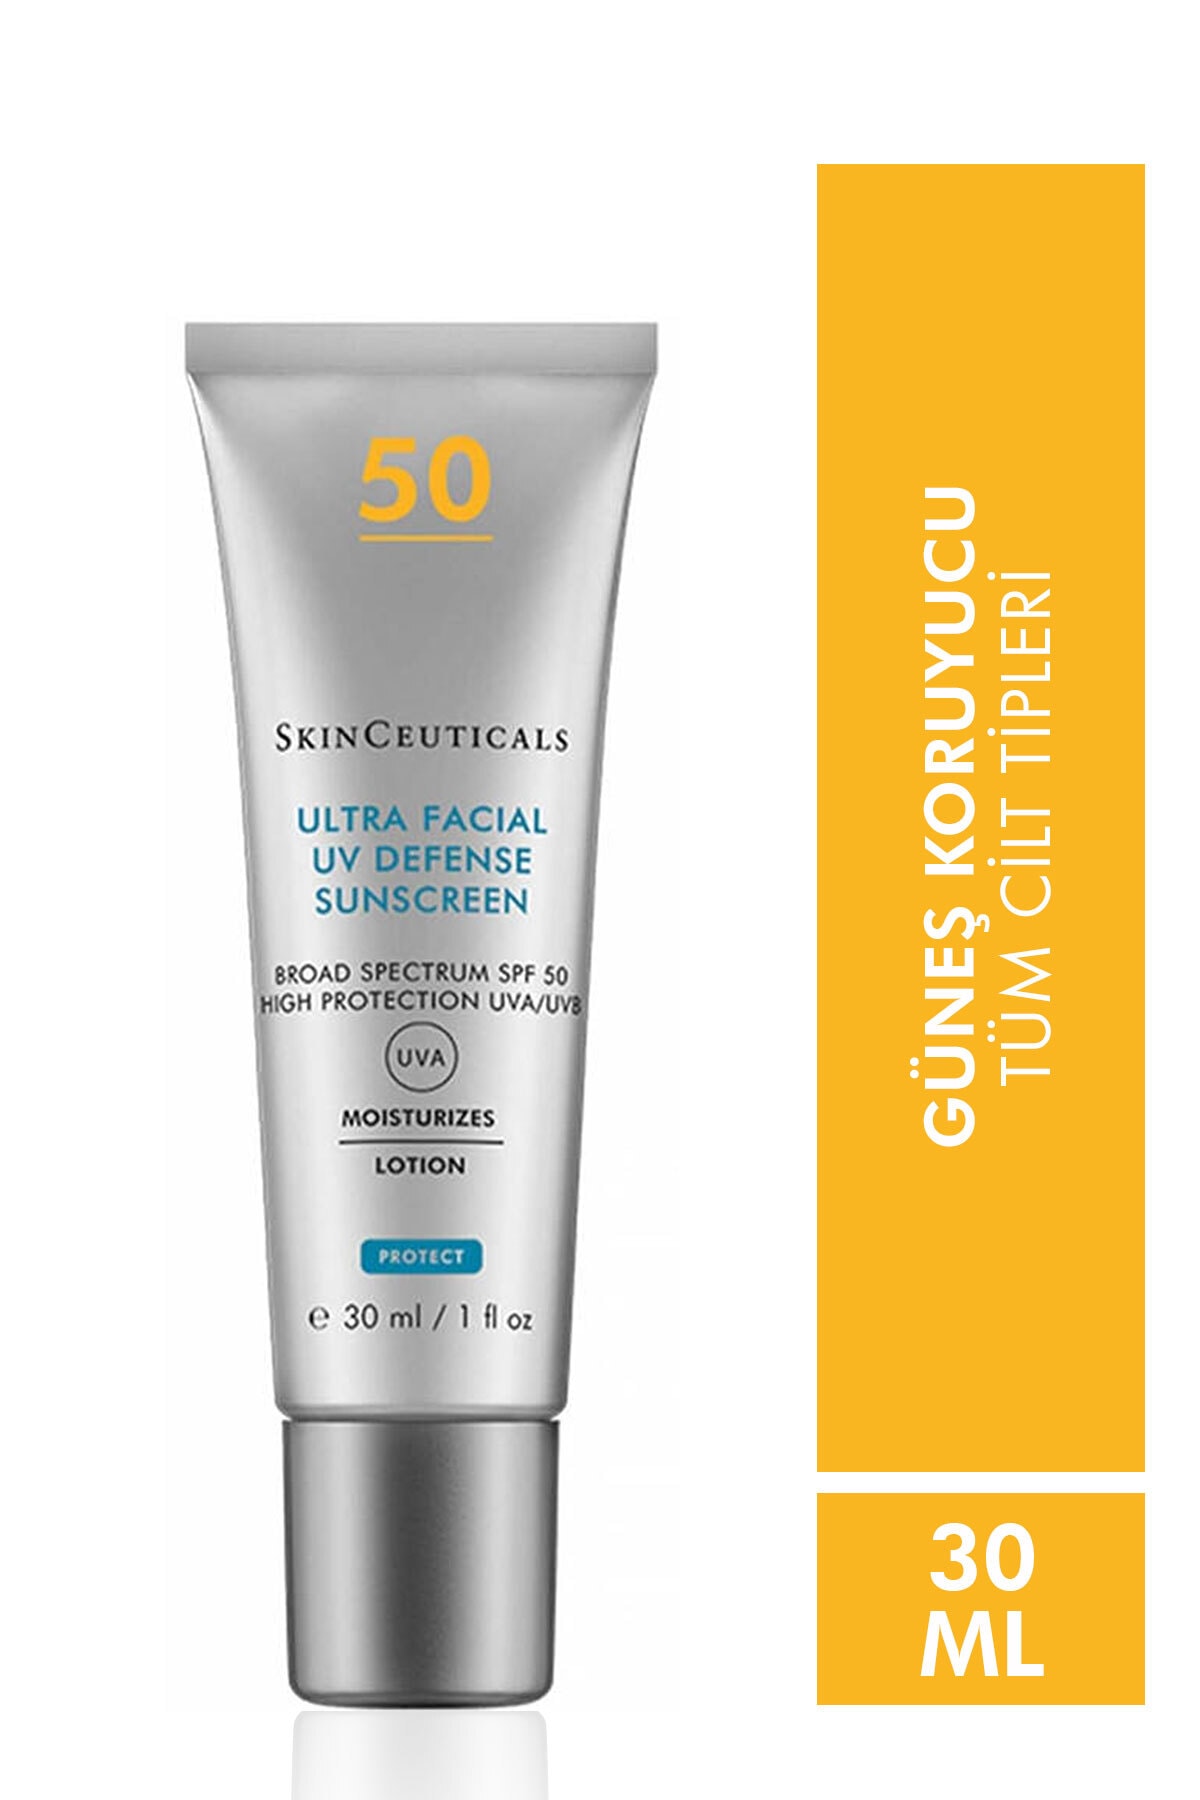 SkinCeuticals Ultra Facial Defense Spf 50 + 30 ml